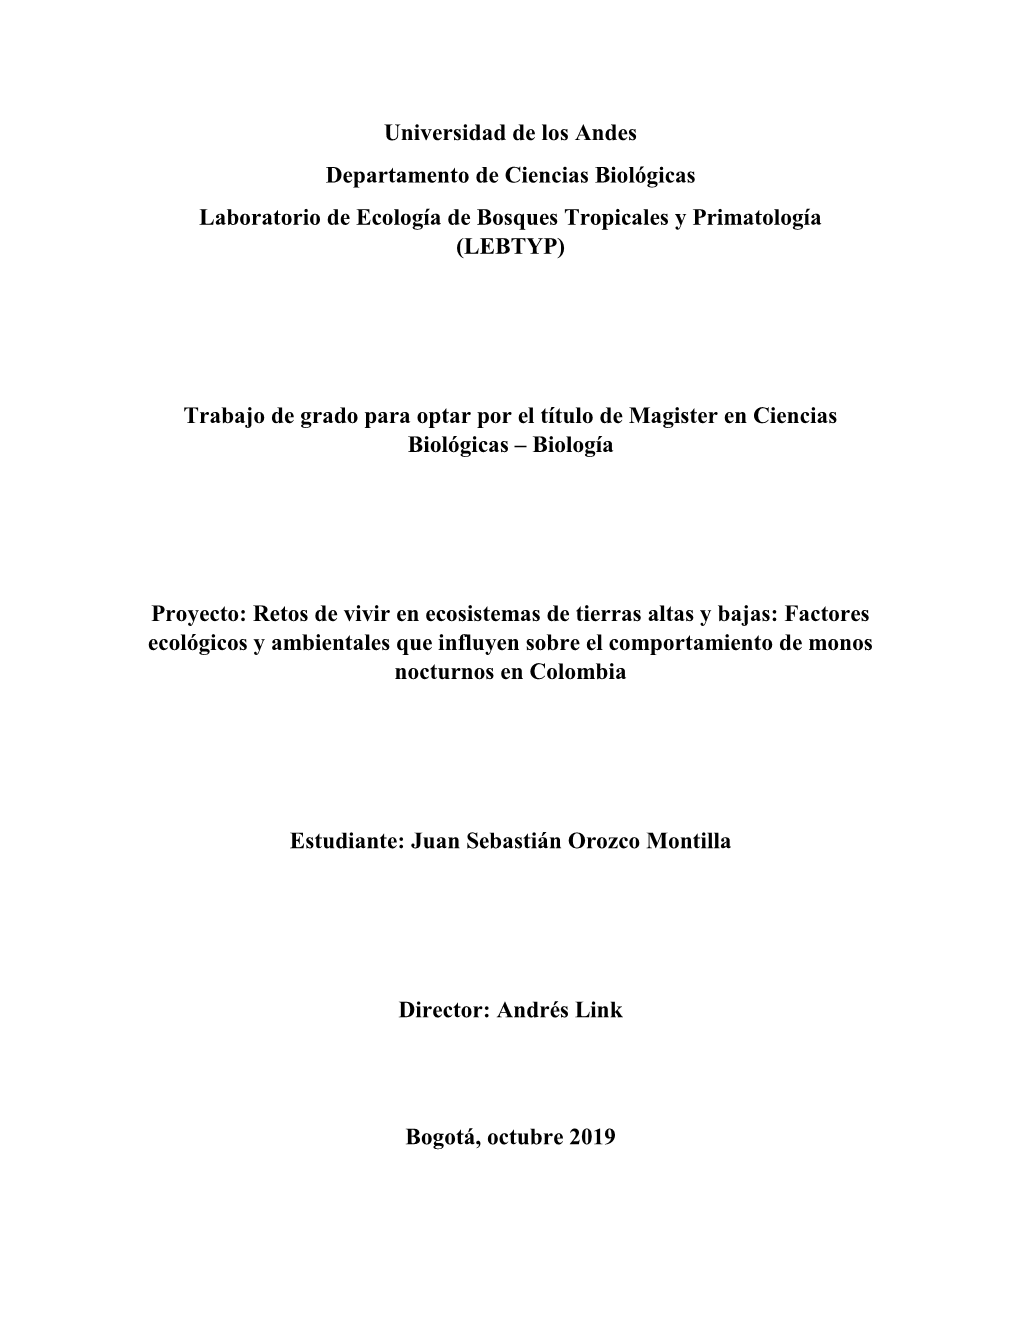 Universidad De Los Andes, Repositorio Institucional